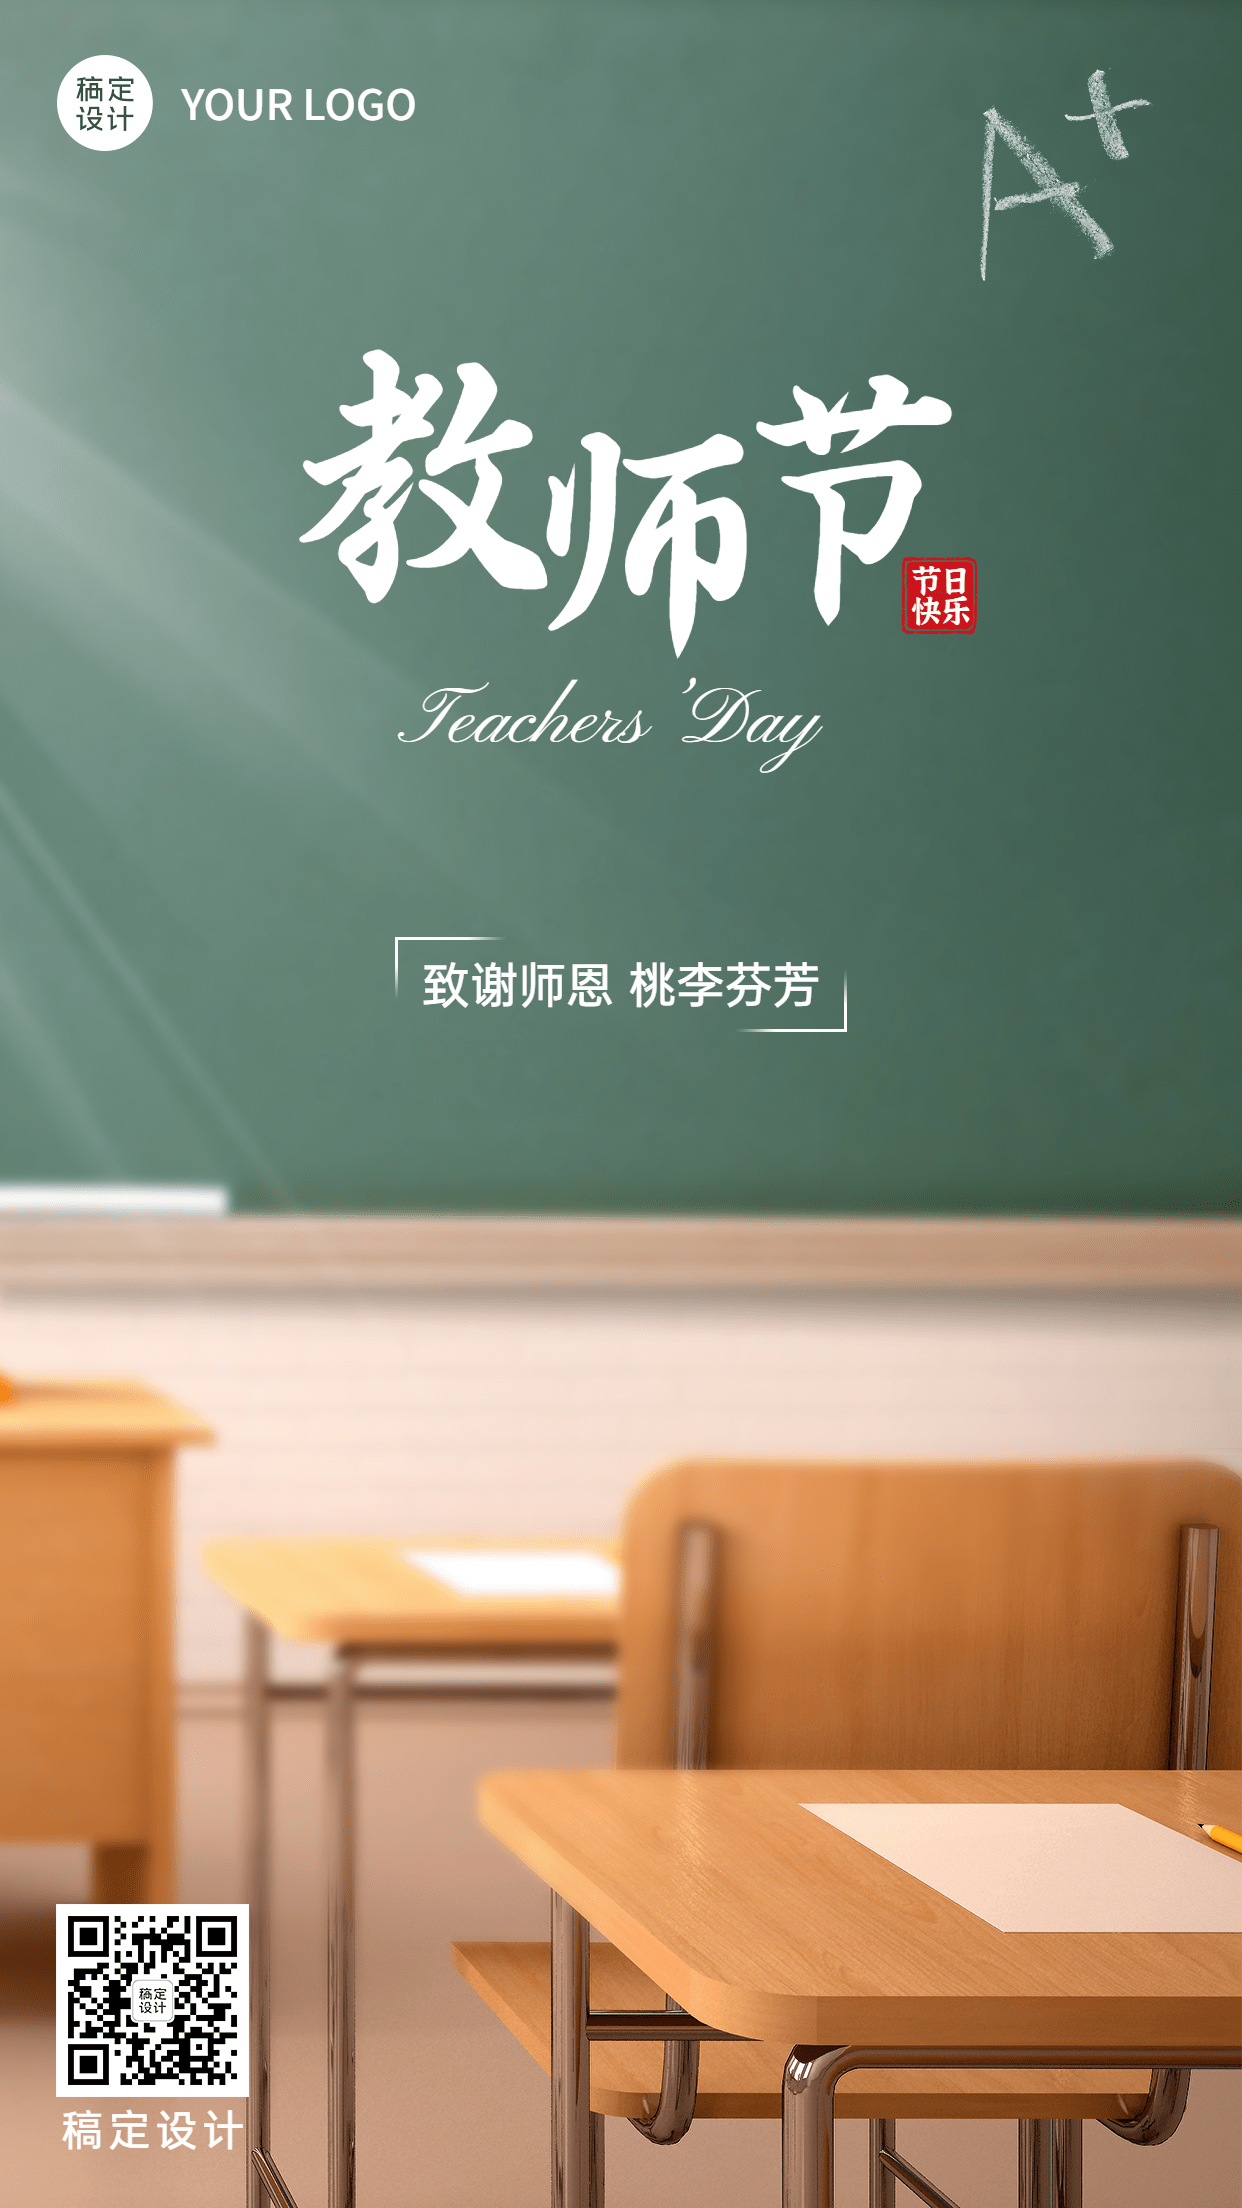 教师节节日祝福排版手机海报